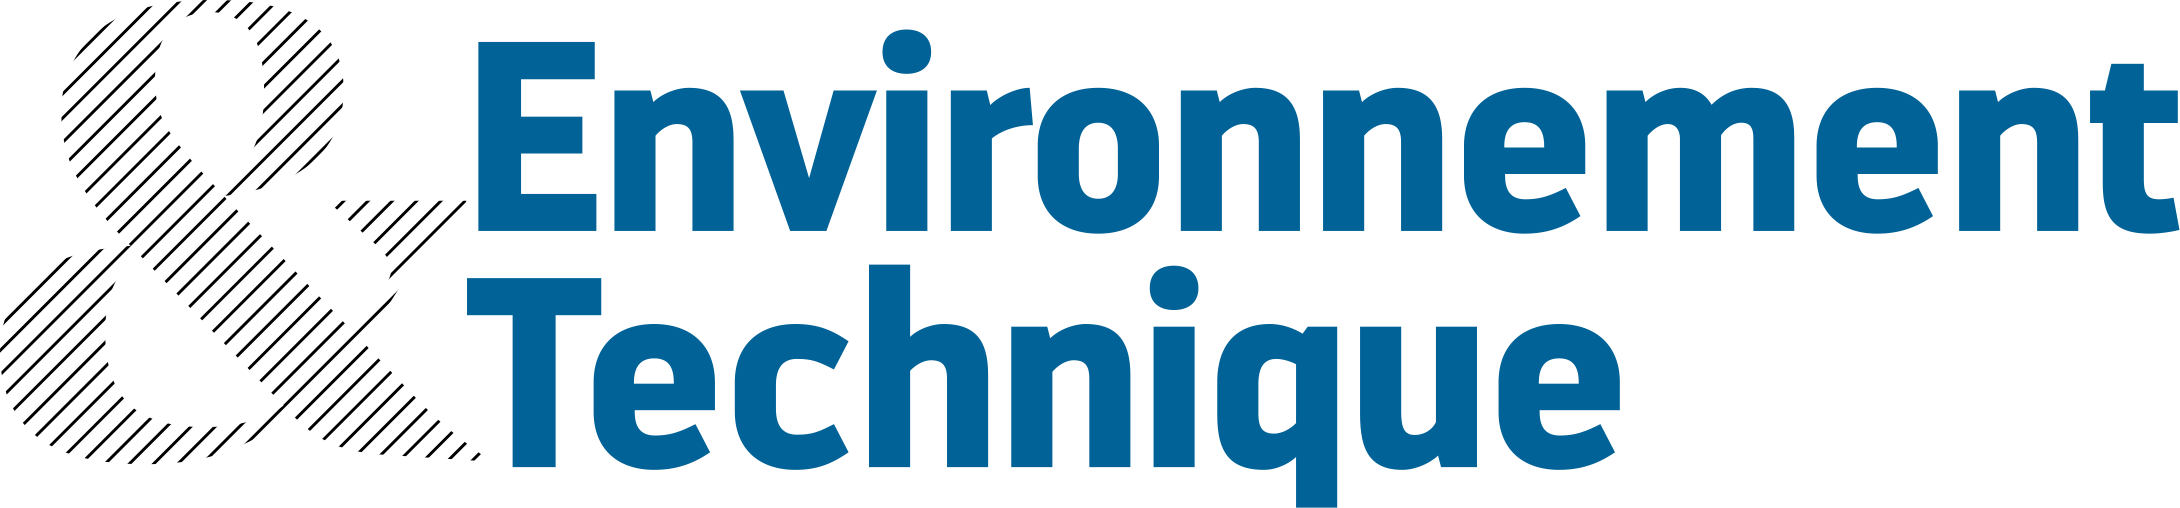 Environnement & Technique logo